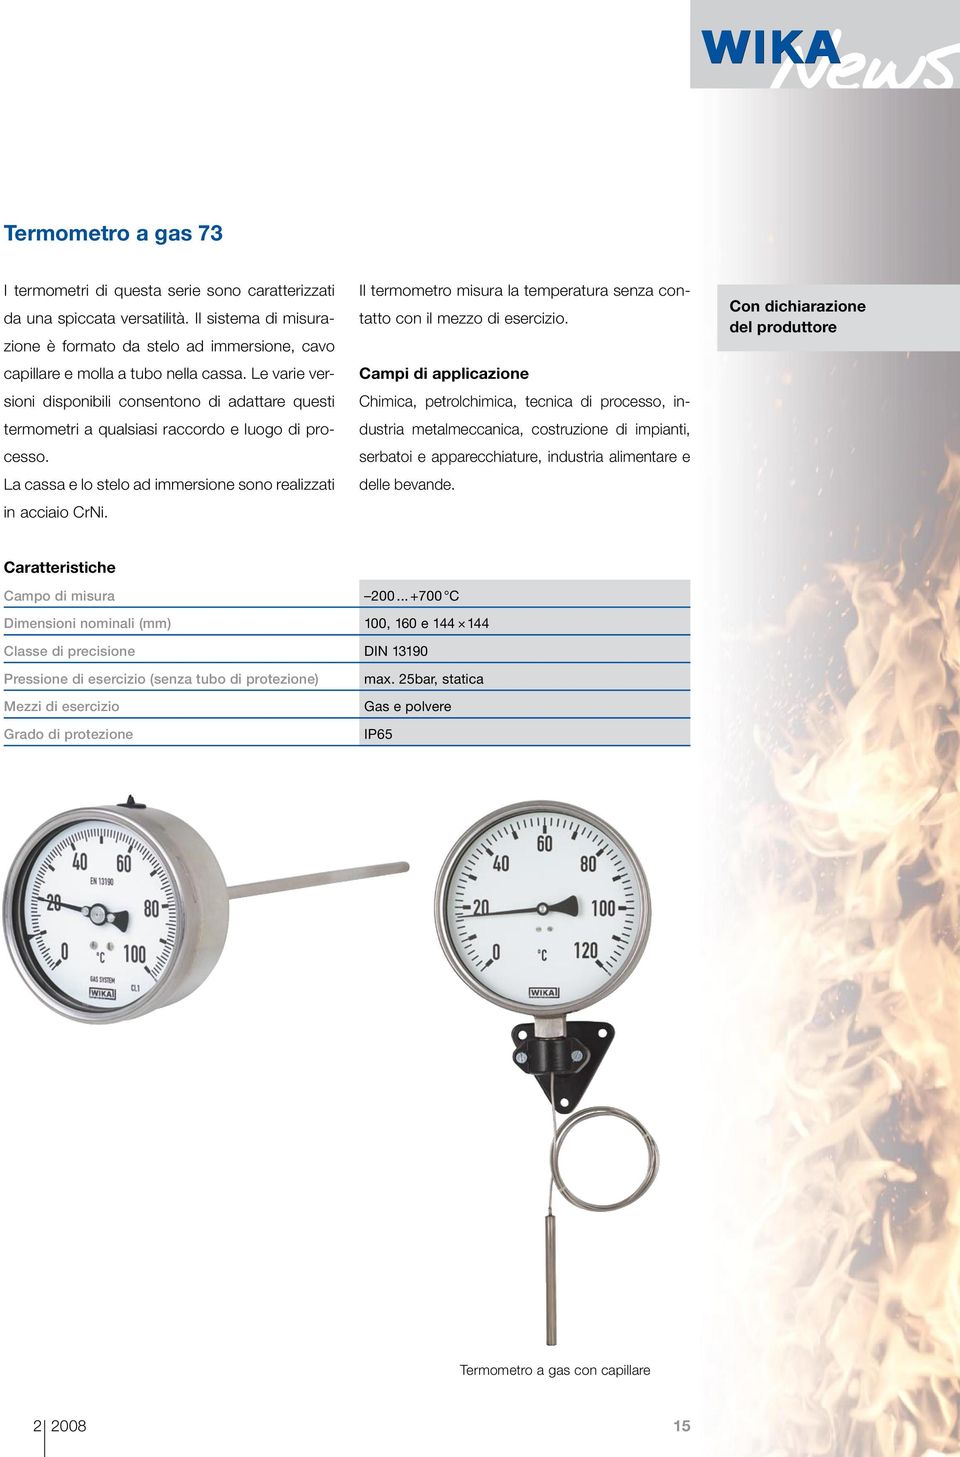 Il termometro misura la temperatura senza contatto con il mezzo di esercizio.